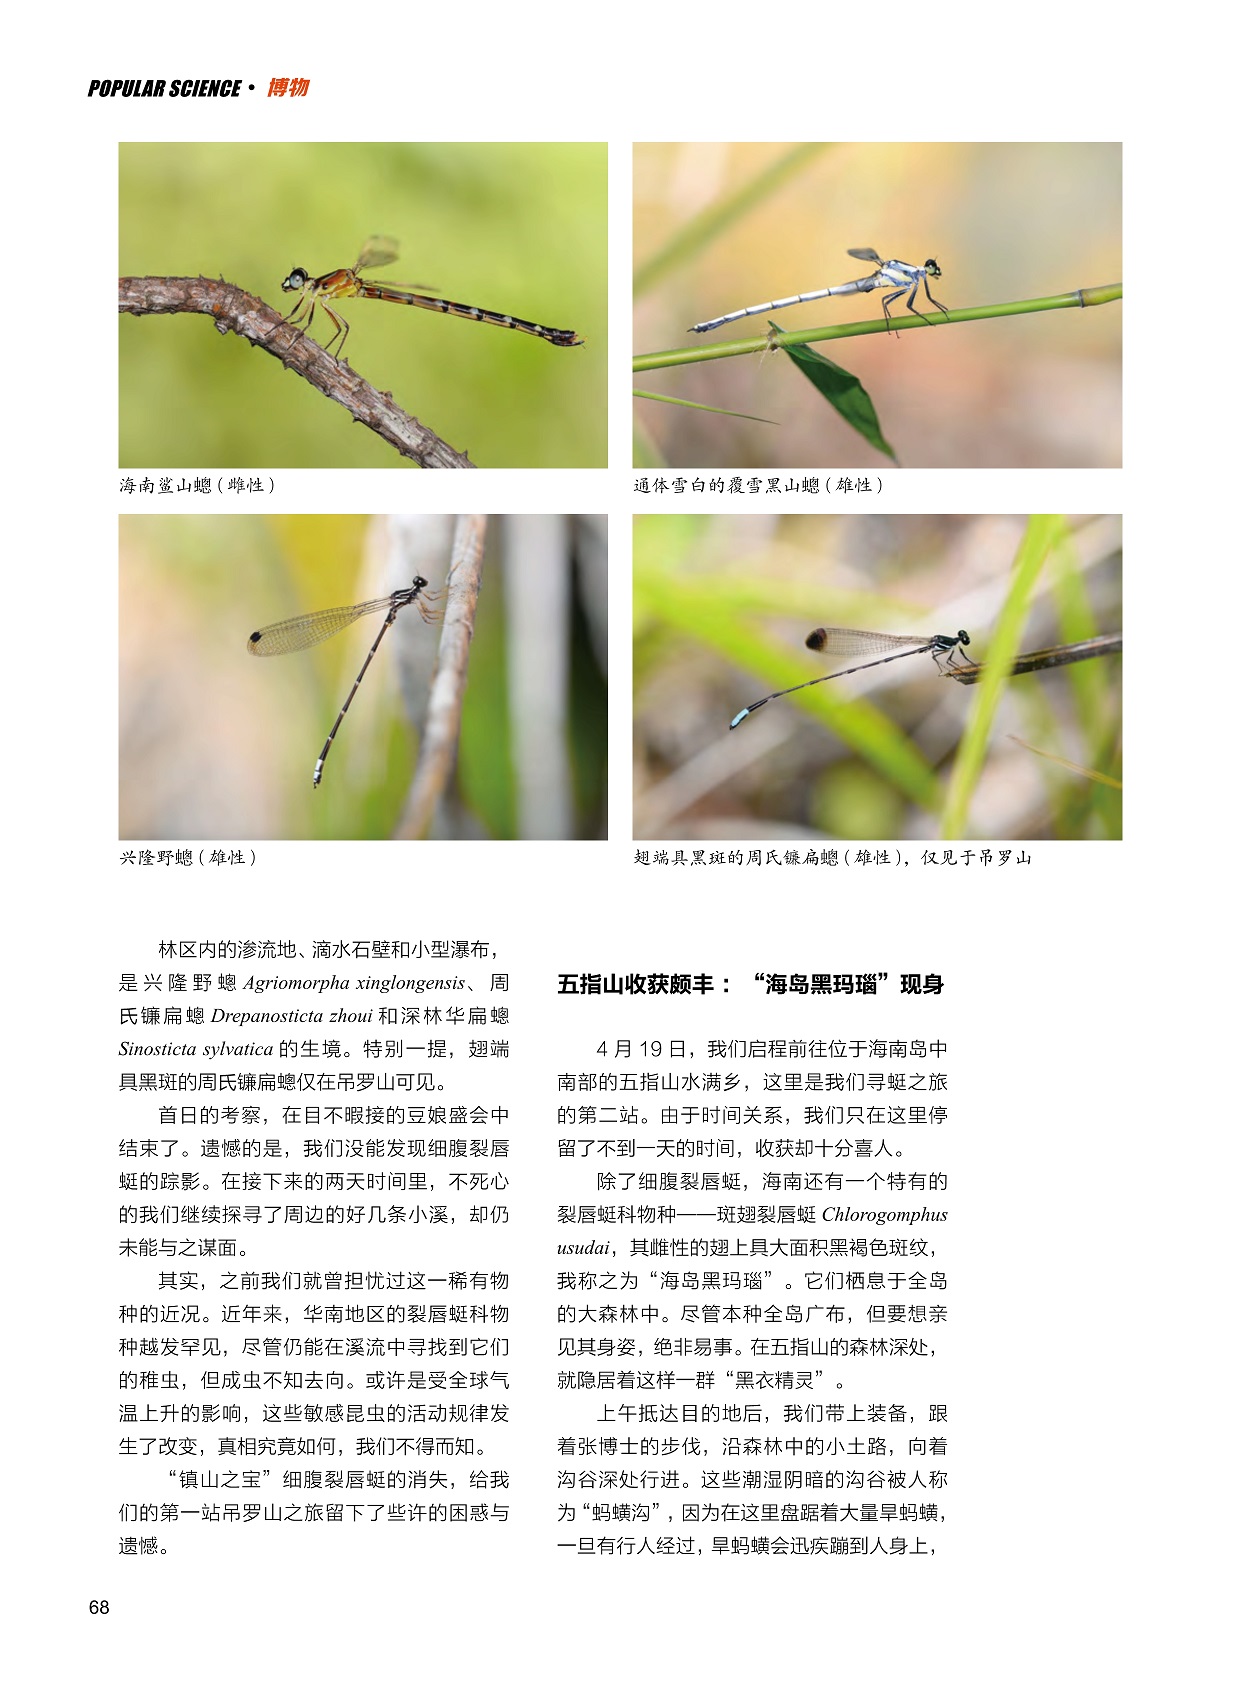 华南地区的裂唇蜓科物种罕见,裂唇蜓科物种斑翅裂唇蜓